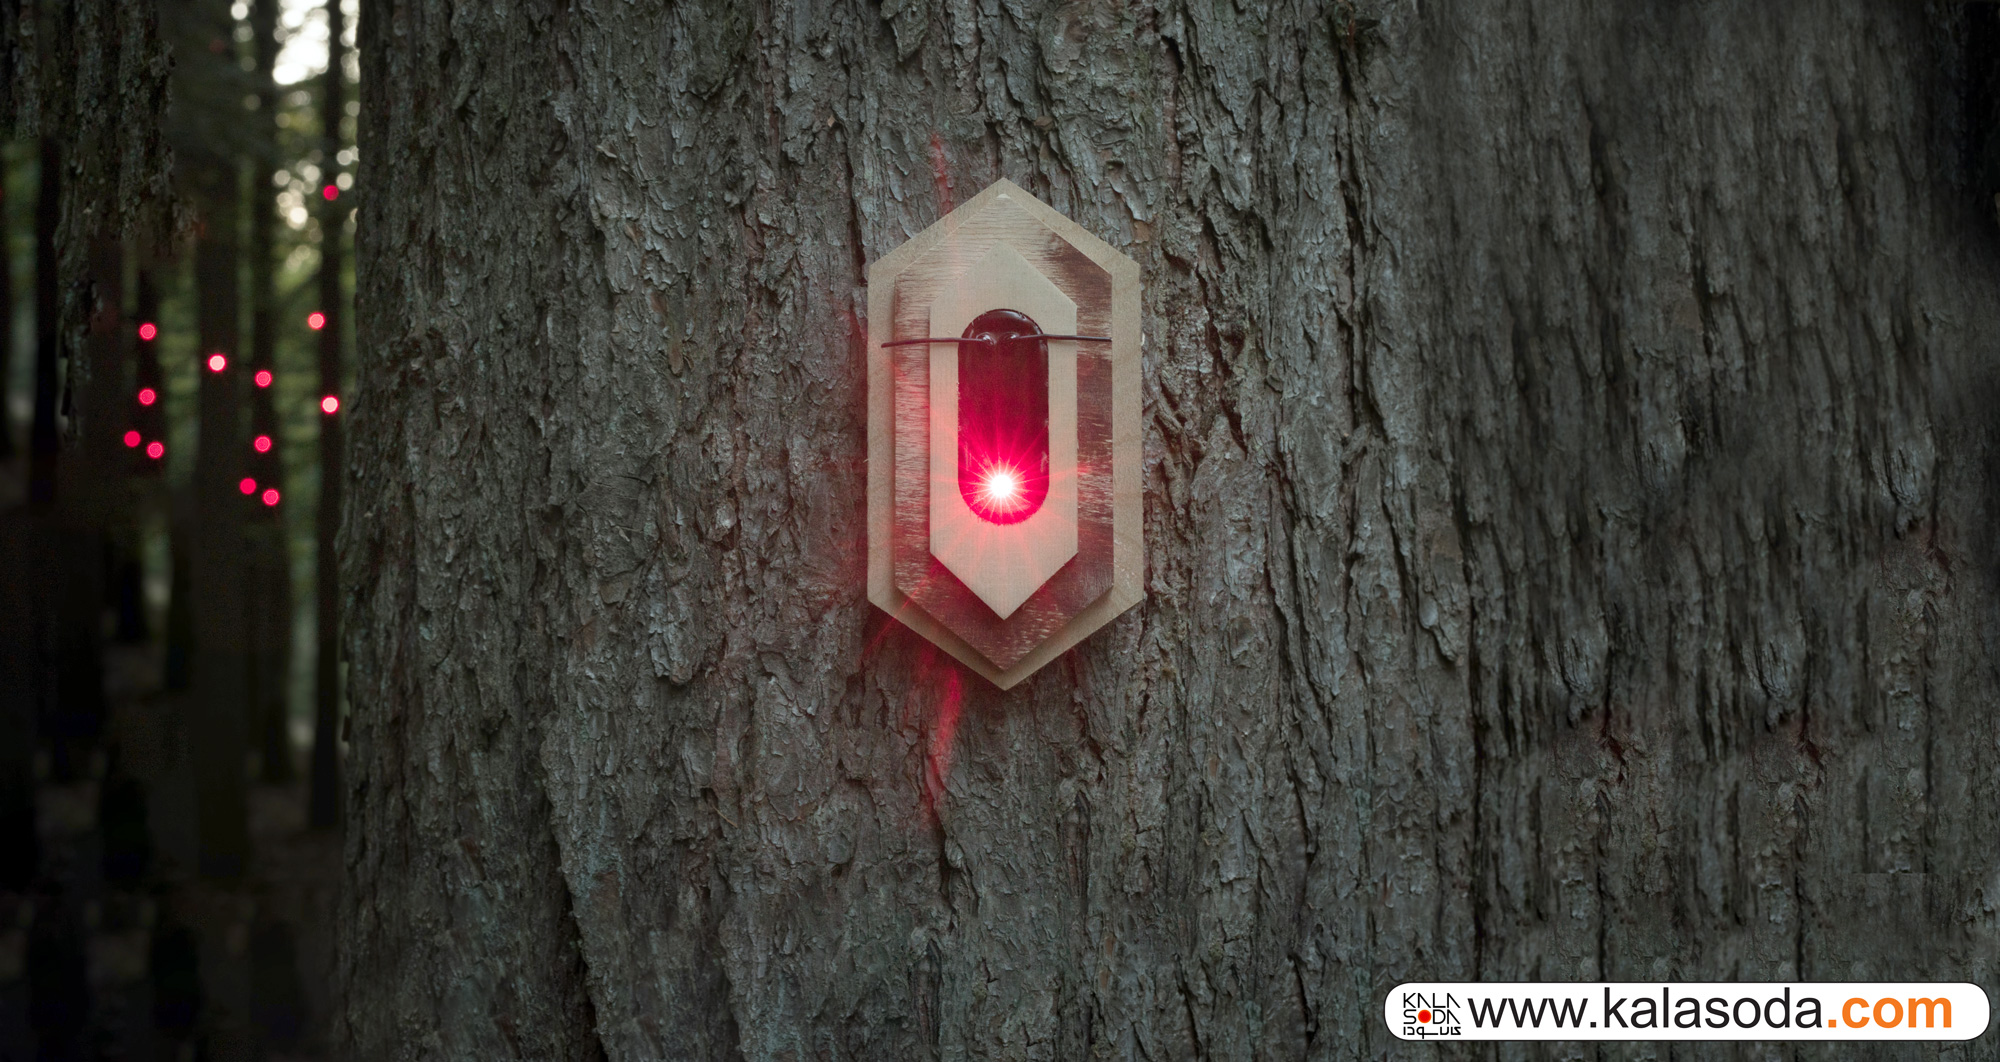 راز فناوری در جنگل!|کالاسودا